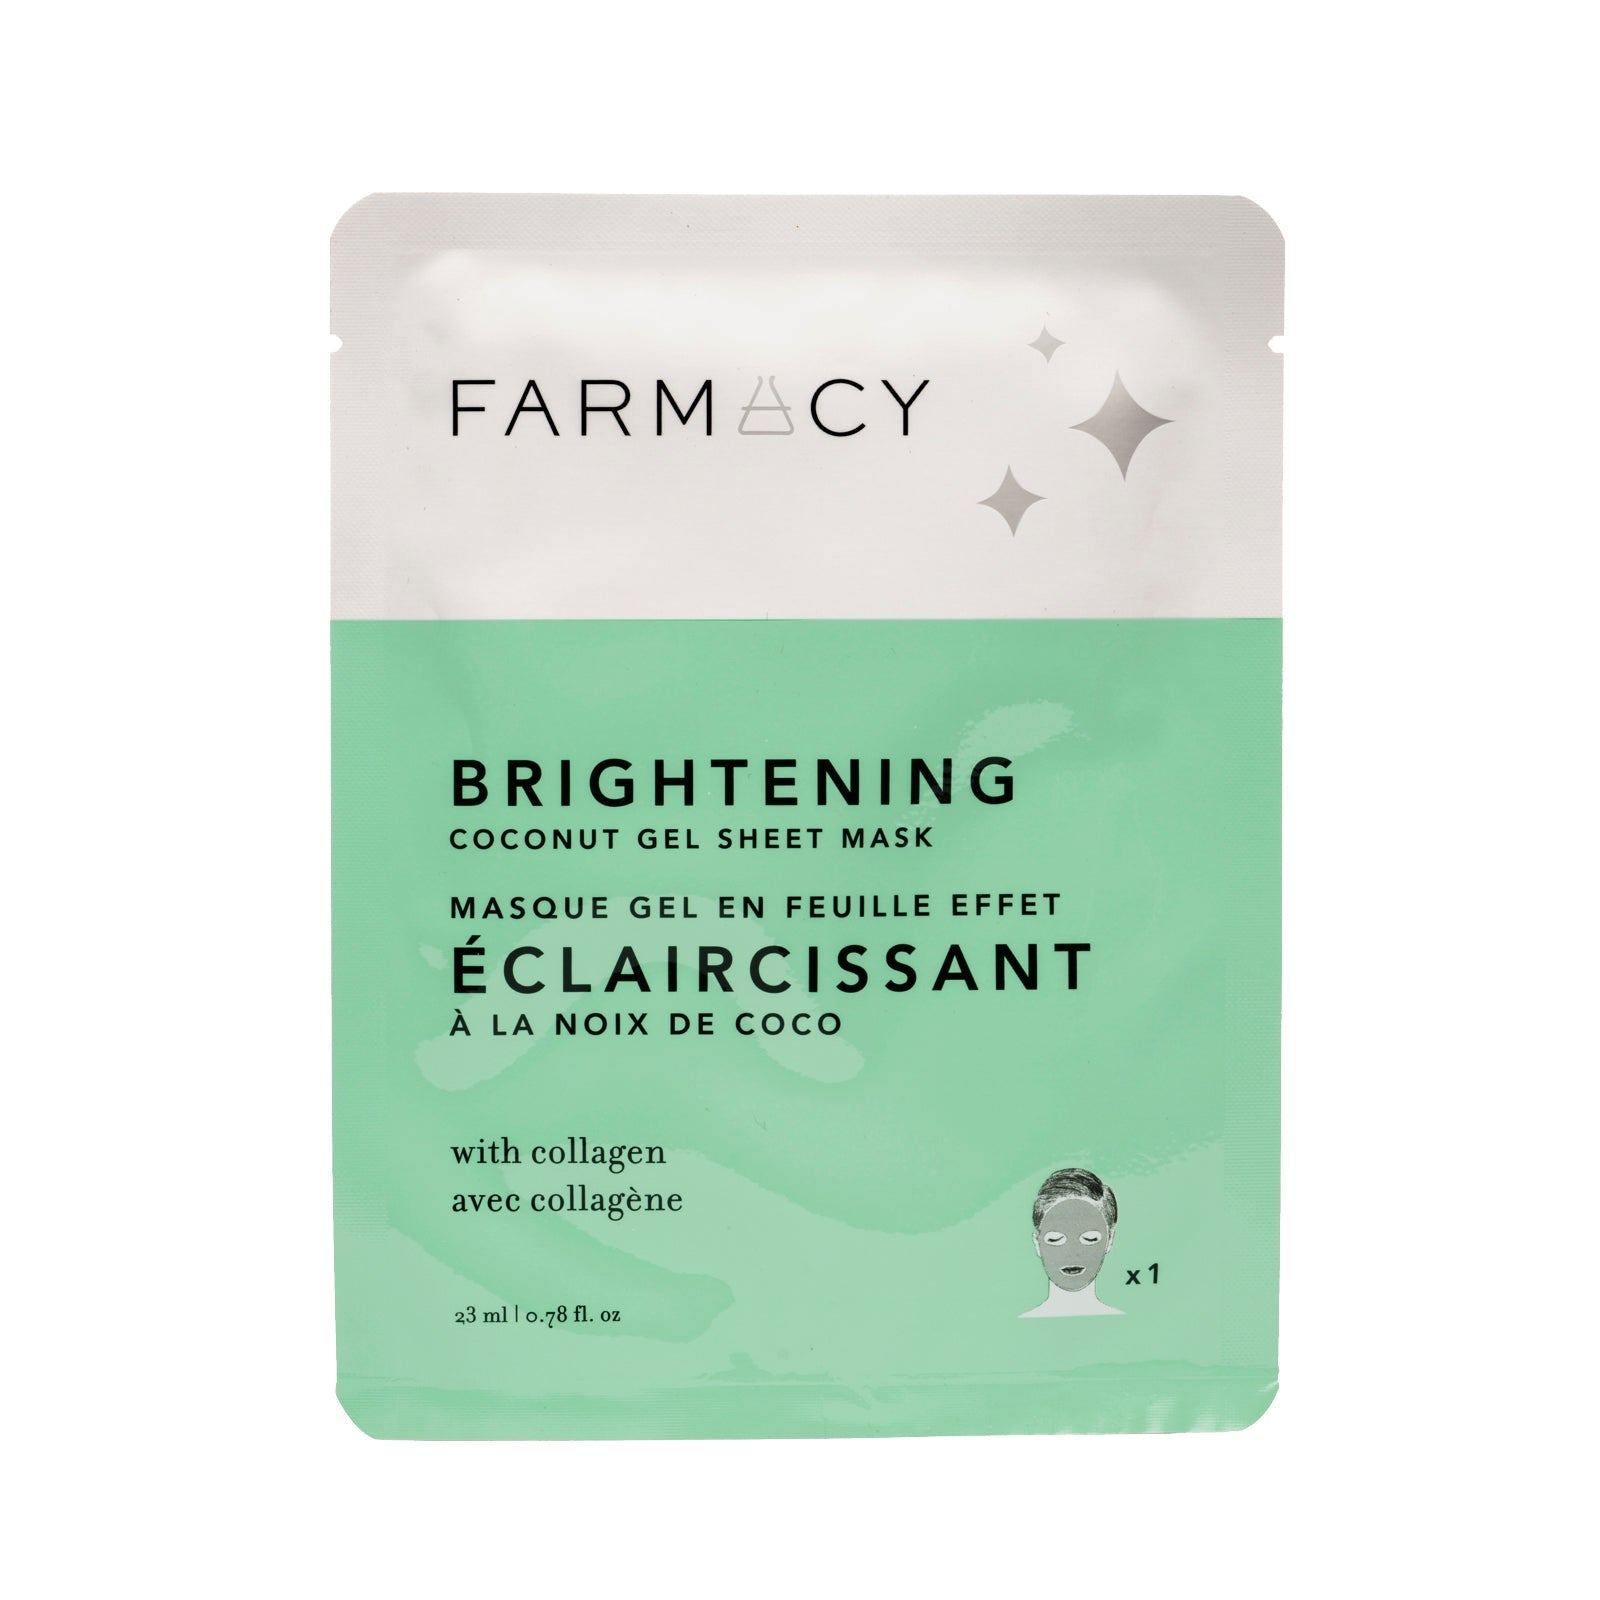  Farmacy's Brightening Coconut Gel Sheet Mask in Packaging